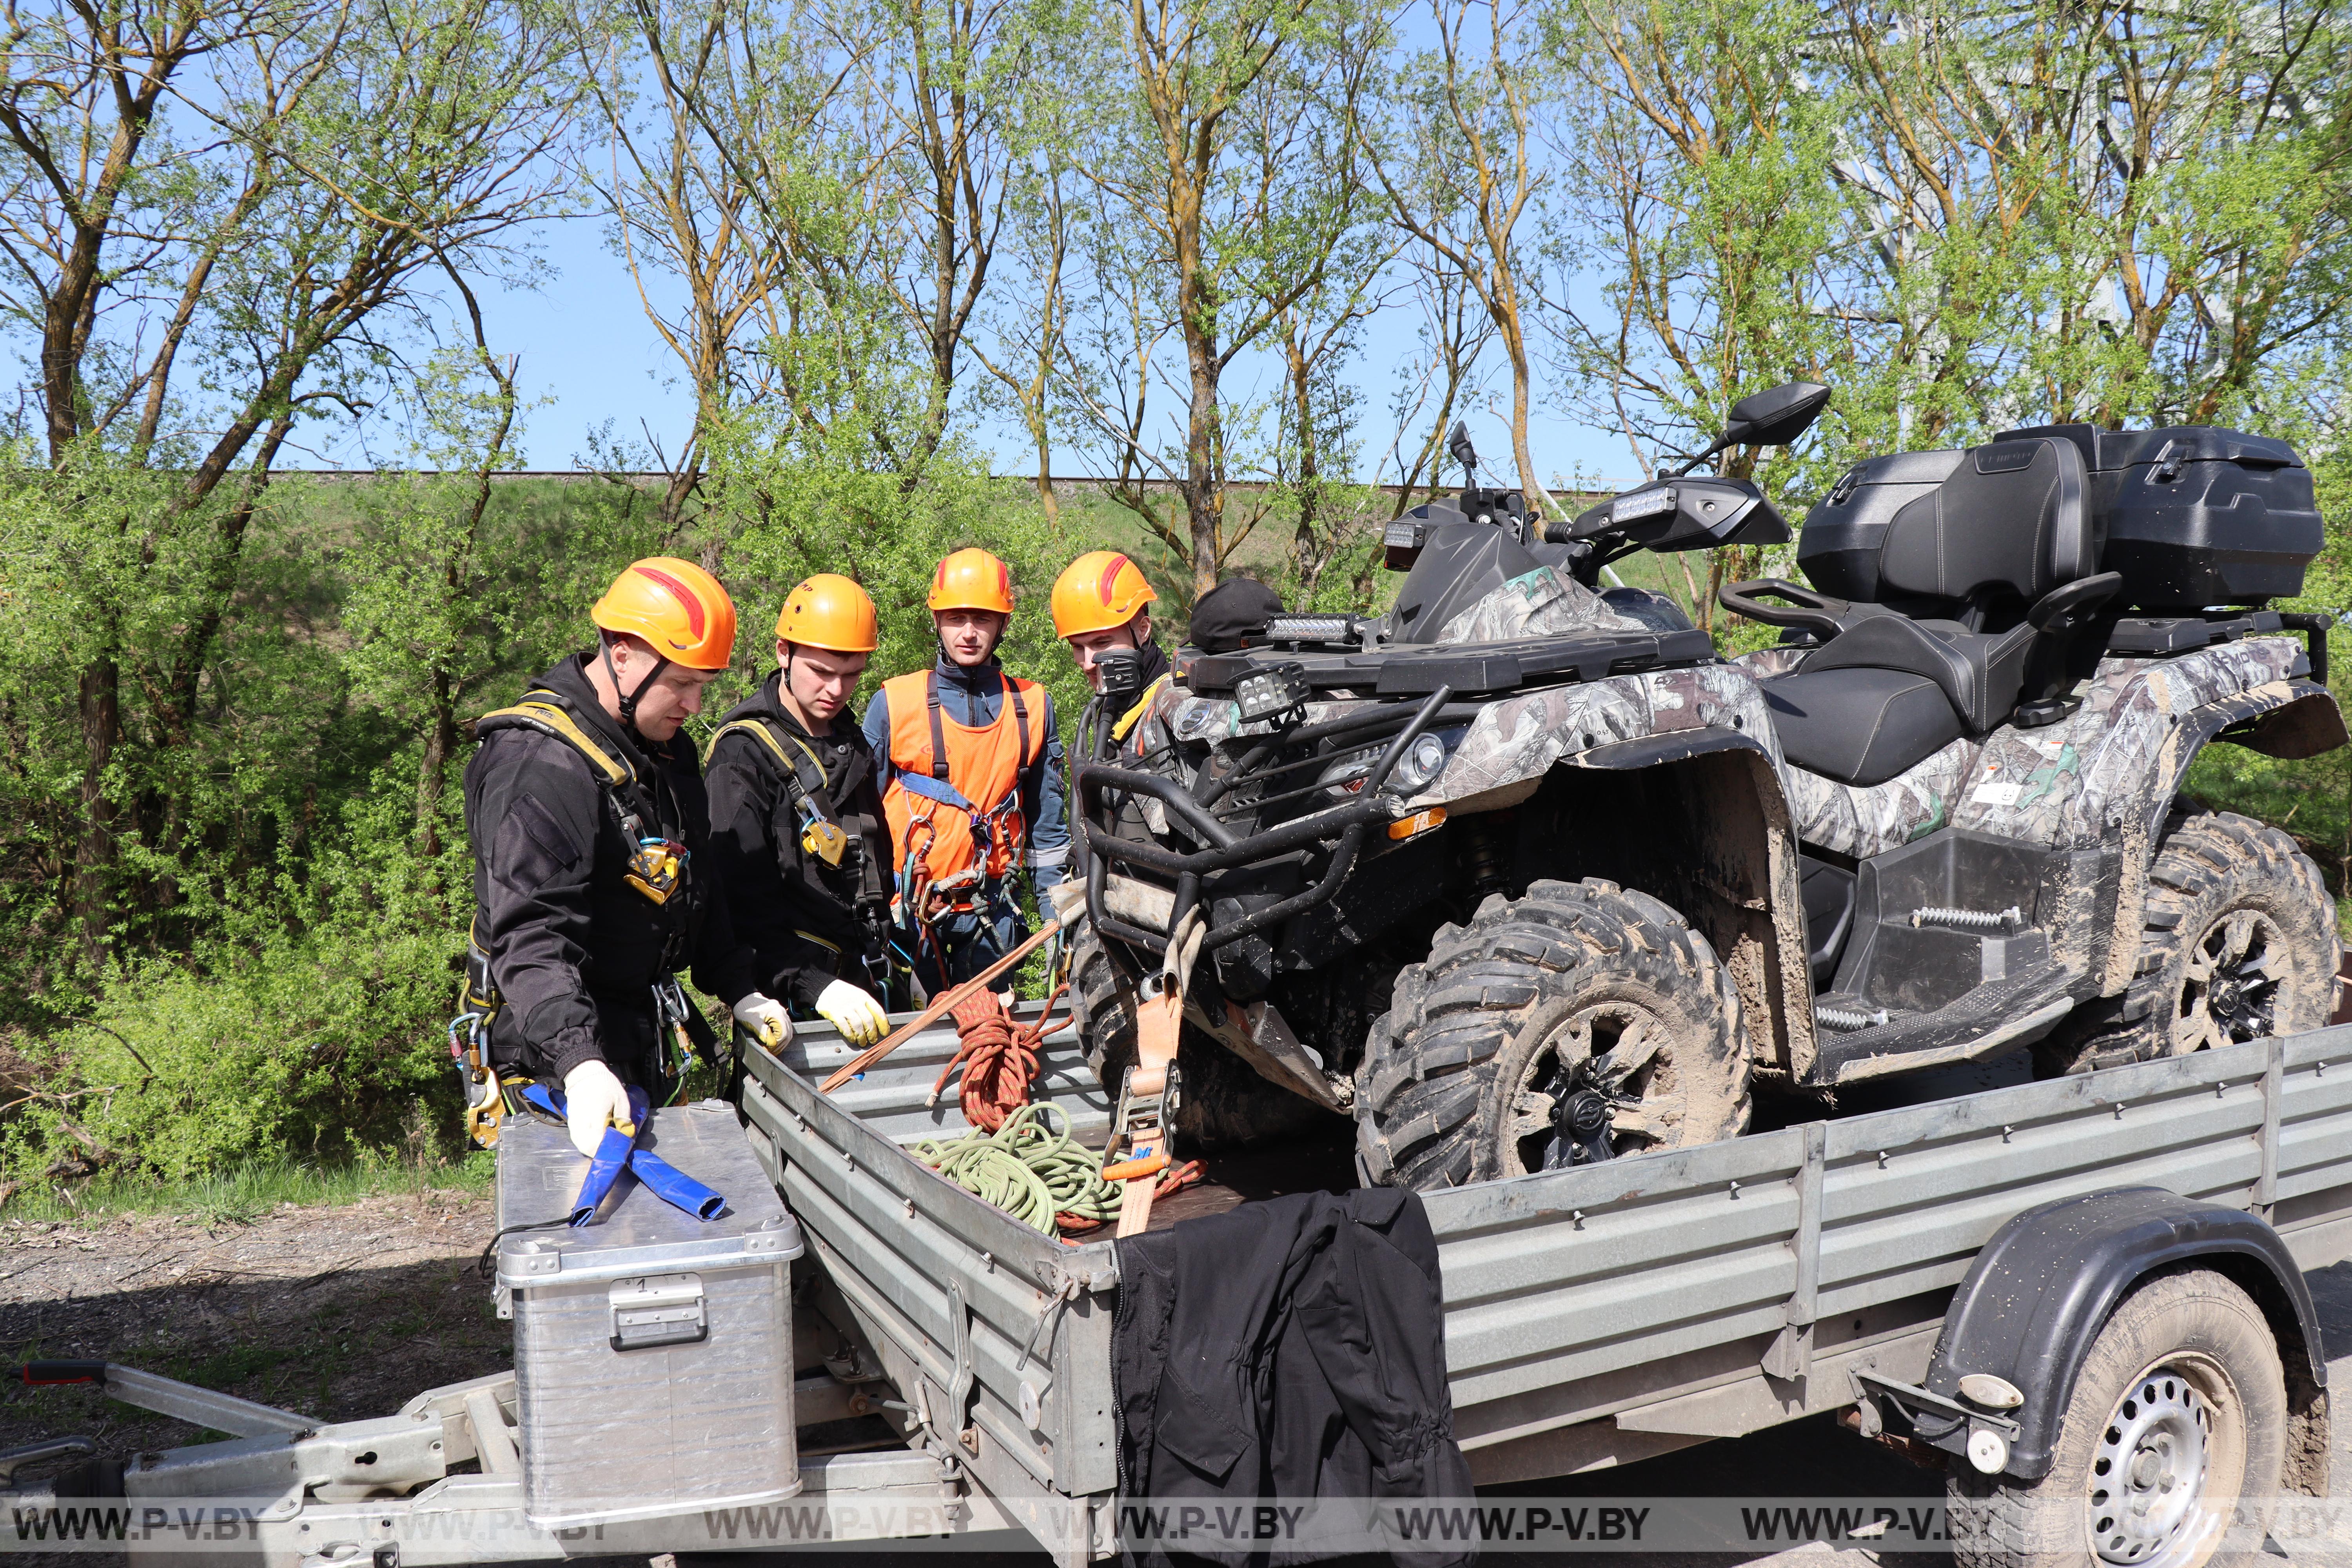 На территории Пинского района проходит трехдневный республиканский семинар поисково-спасательной службы МЧС.